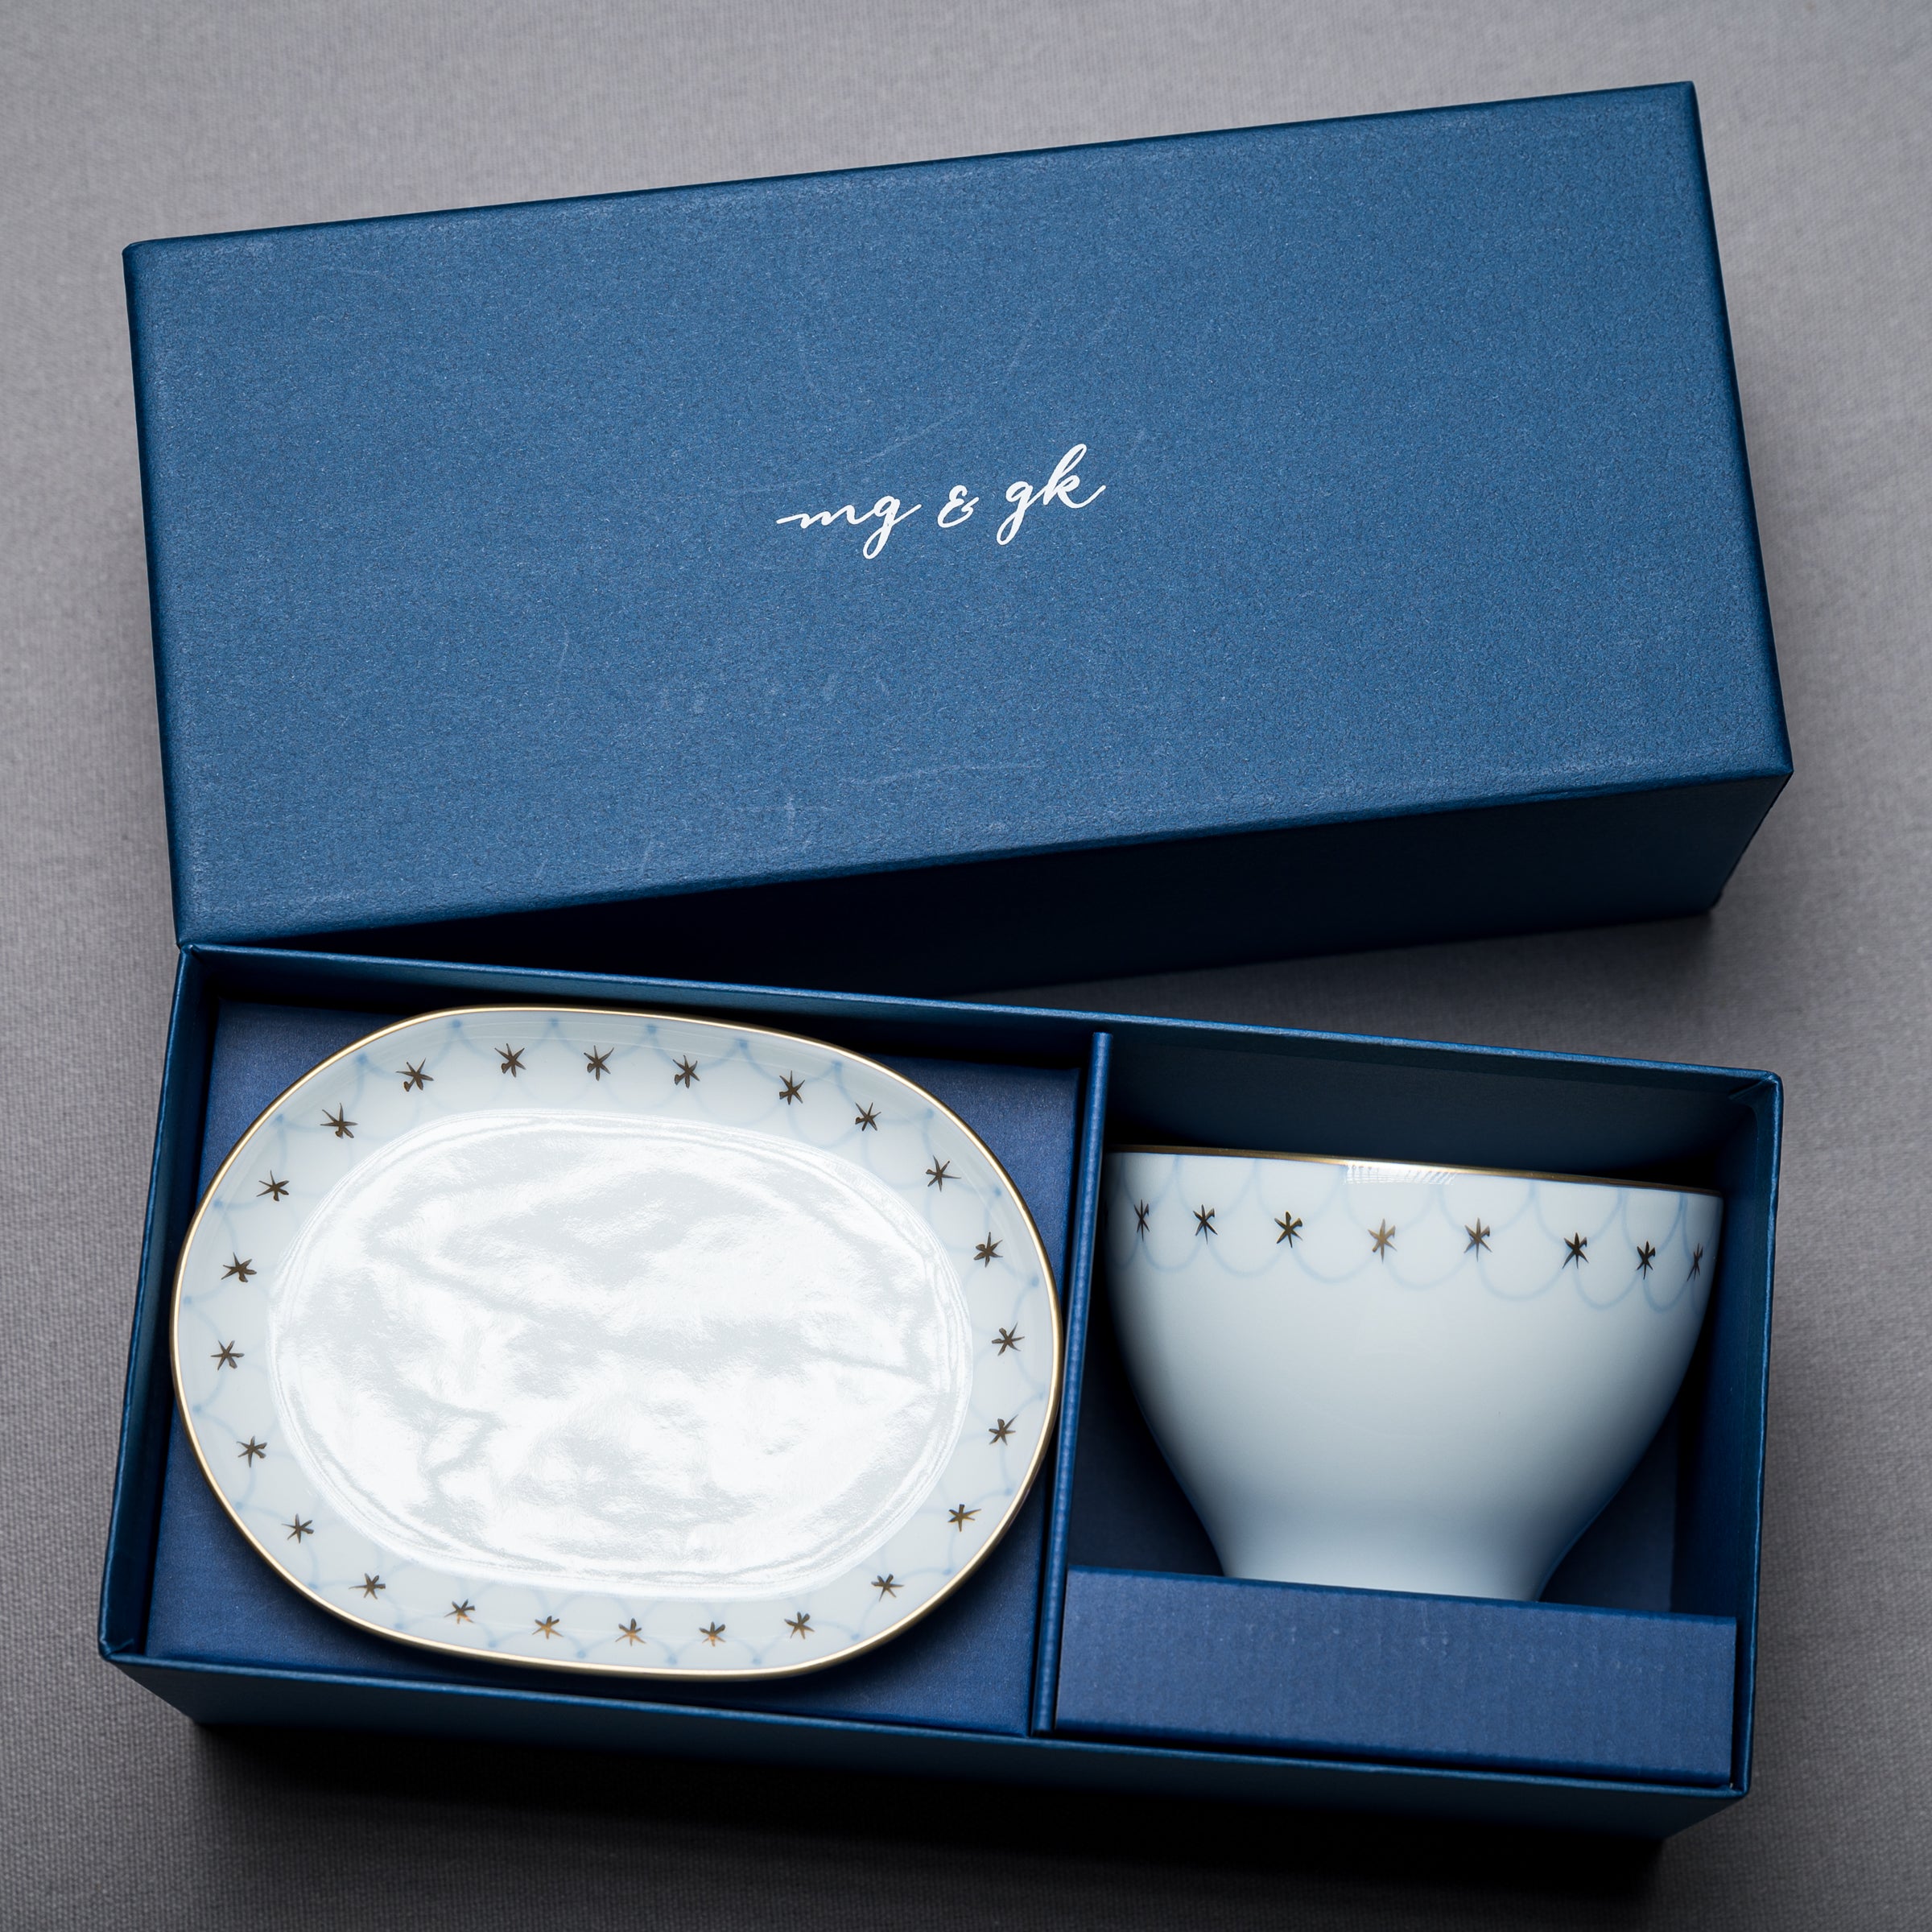 Arita Soup Cup & Saucer Plate Gift Set / Nami 波 (Wave)